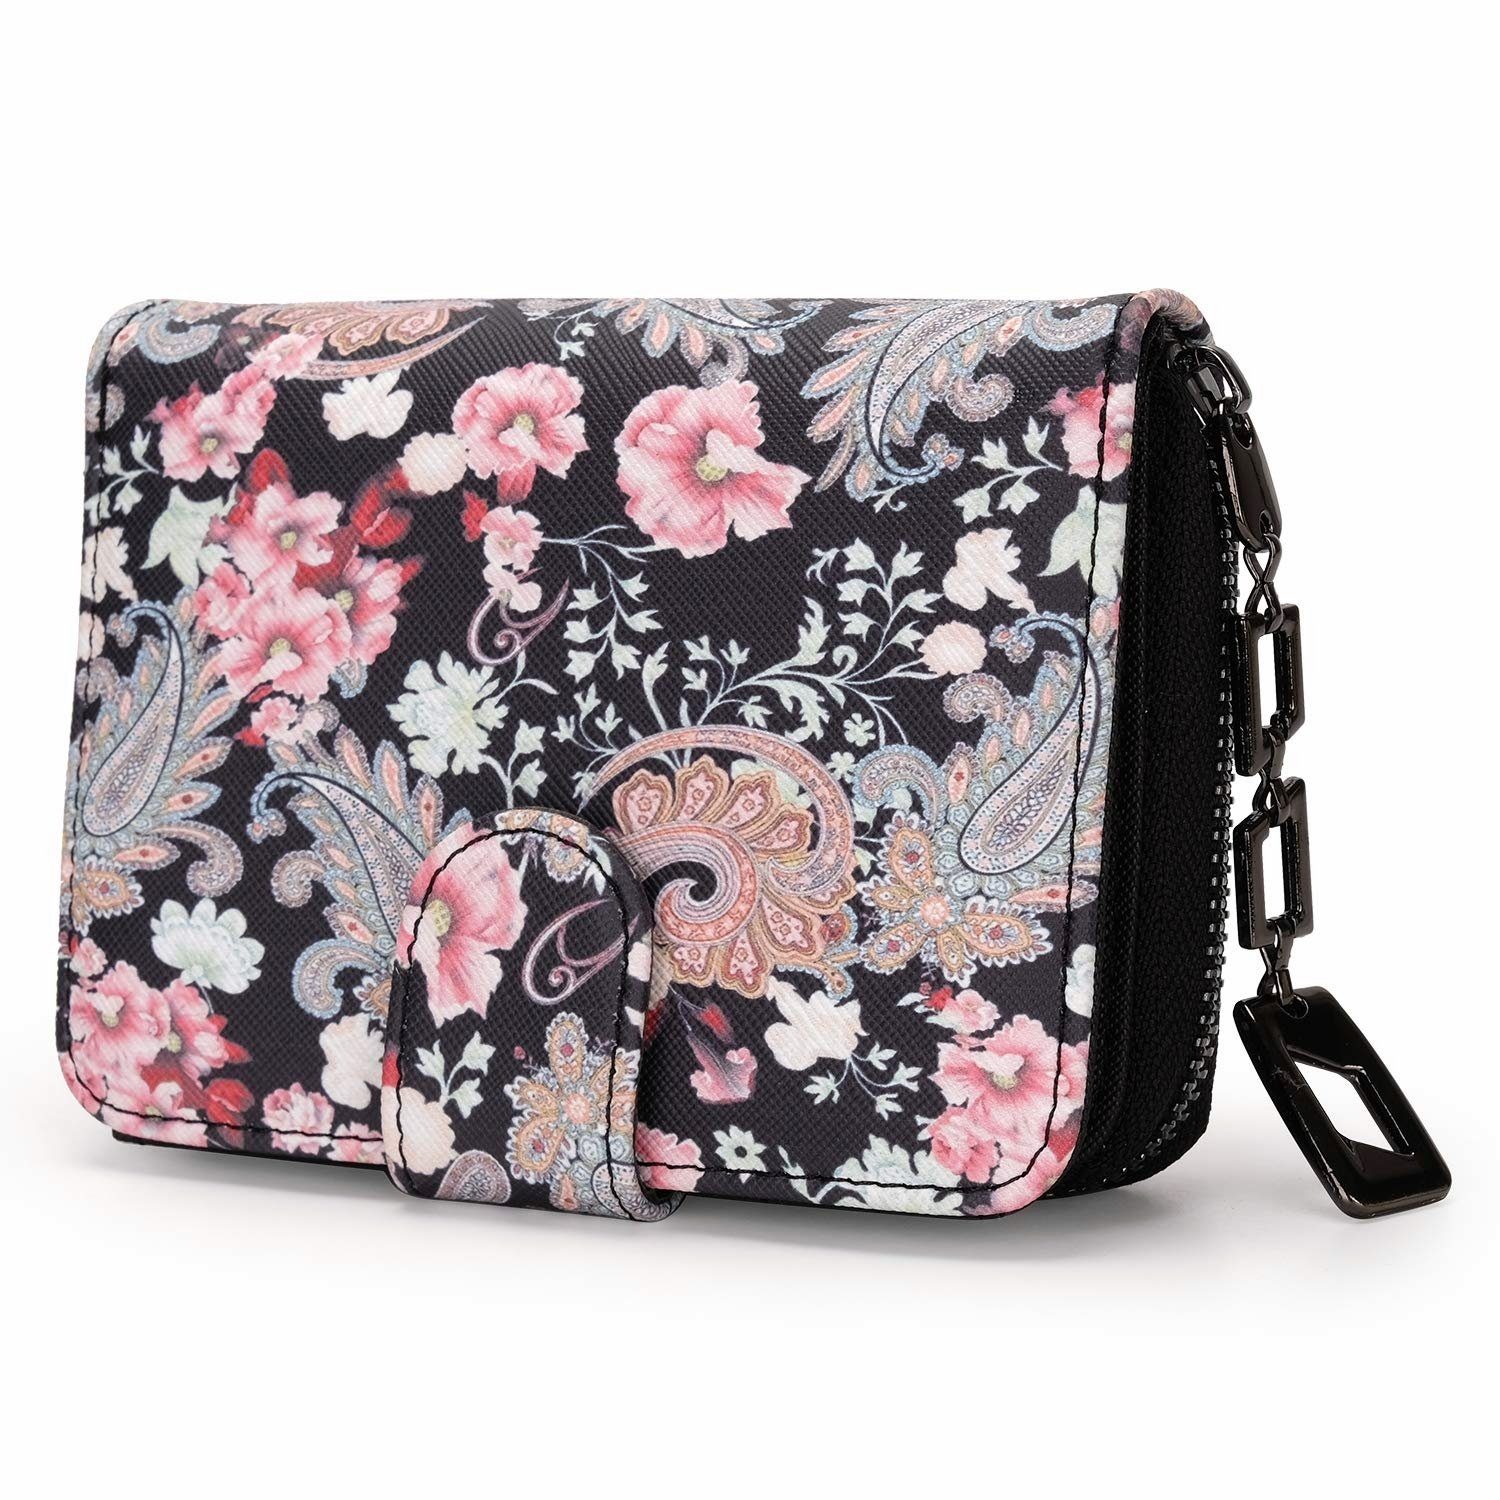 TAN.TOMI Brieftasche Geldbeutel mit Blumen- und Blütenmuster im Mandala Stil, Praktische Aufteilung mit viel Platz Floral Dreams | Brieftaschen